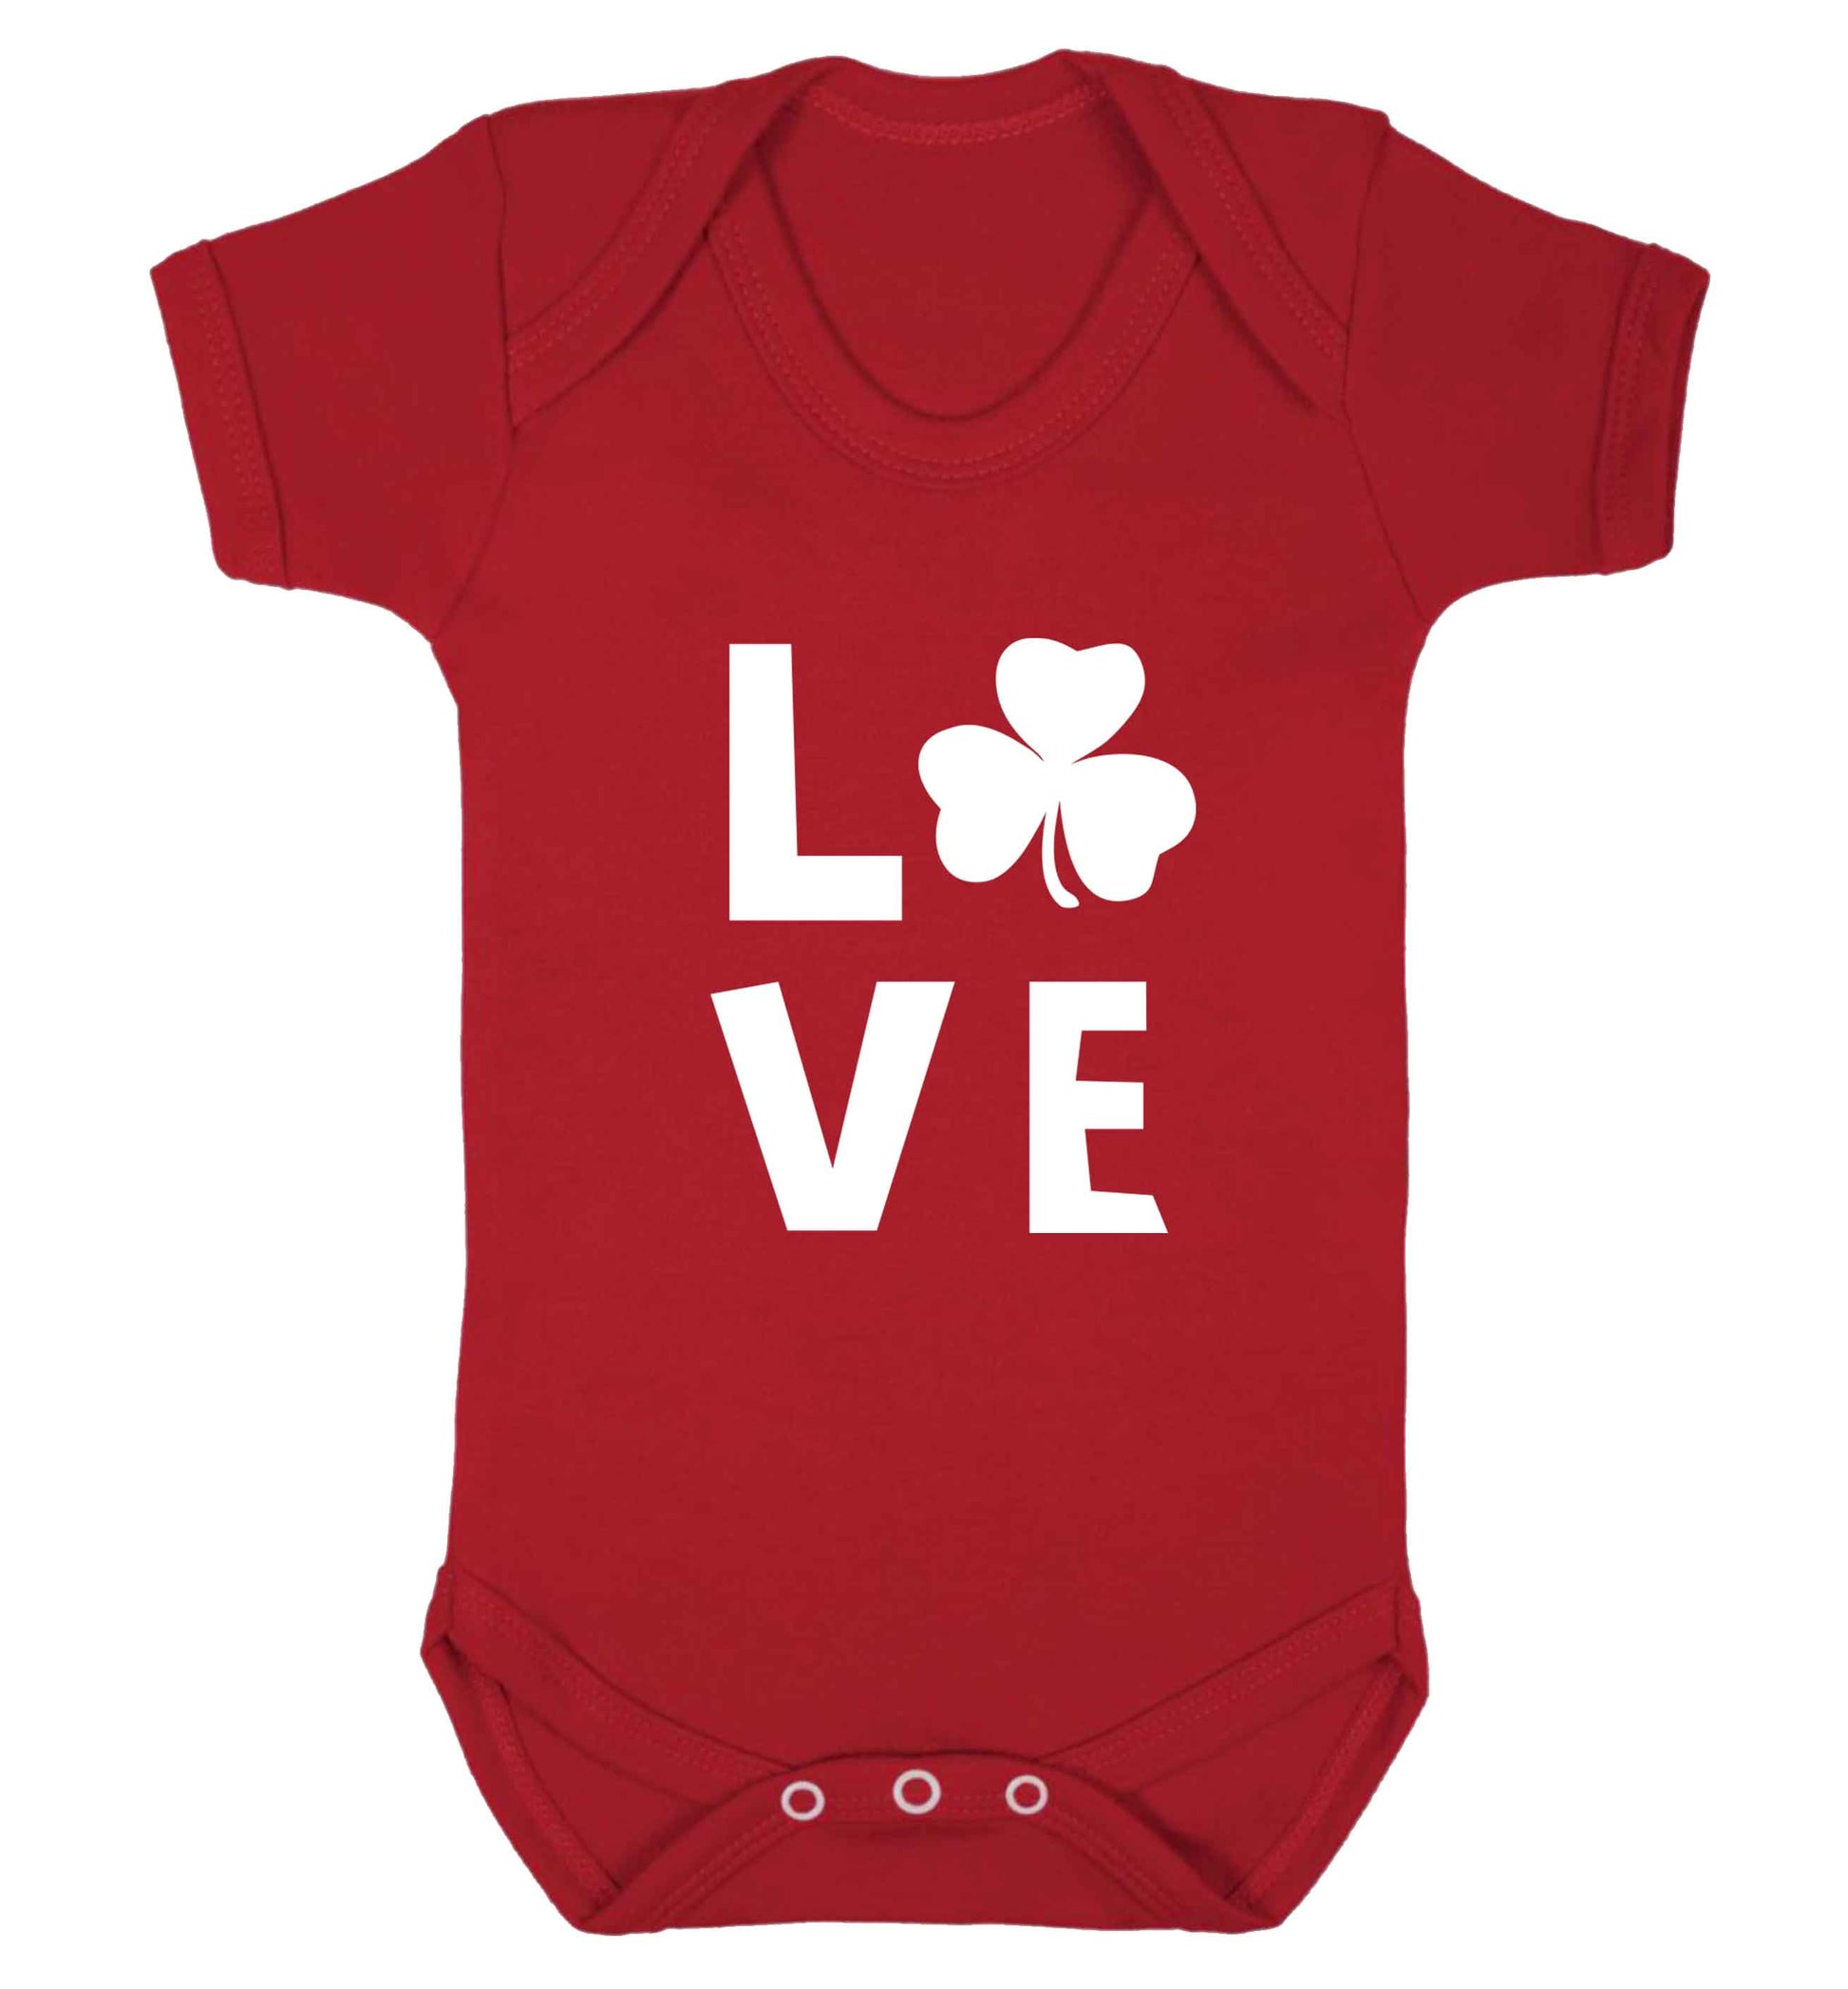 Shamrock love baby vest red 18-24 months